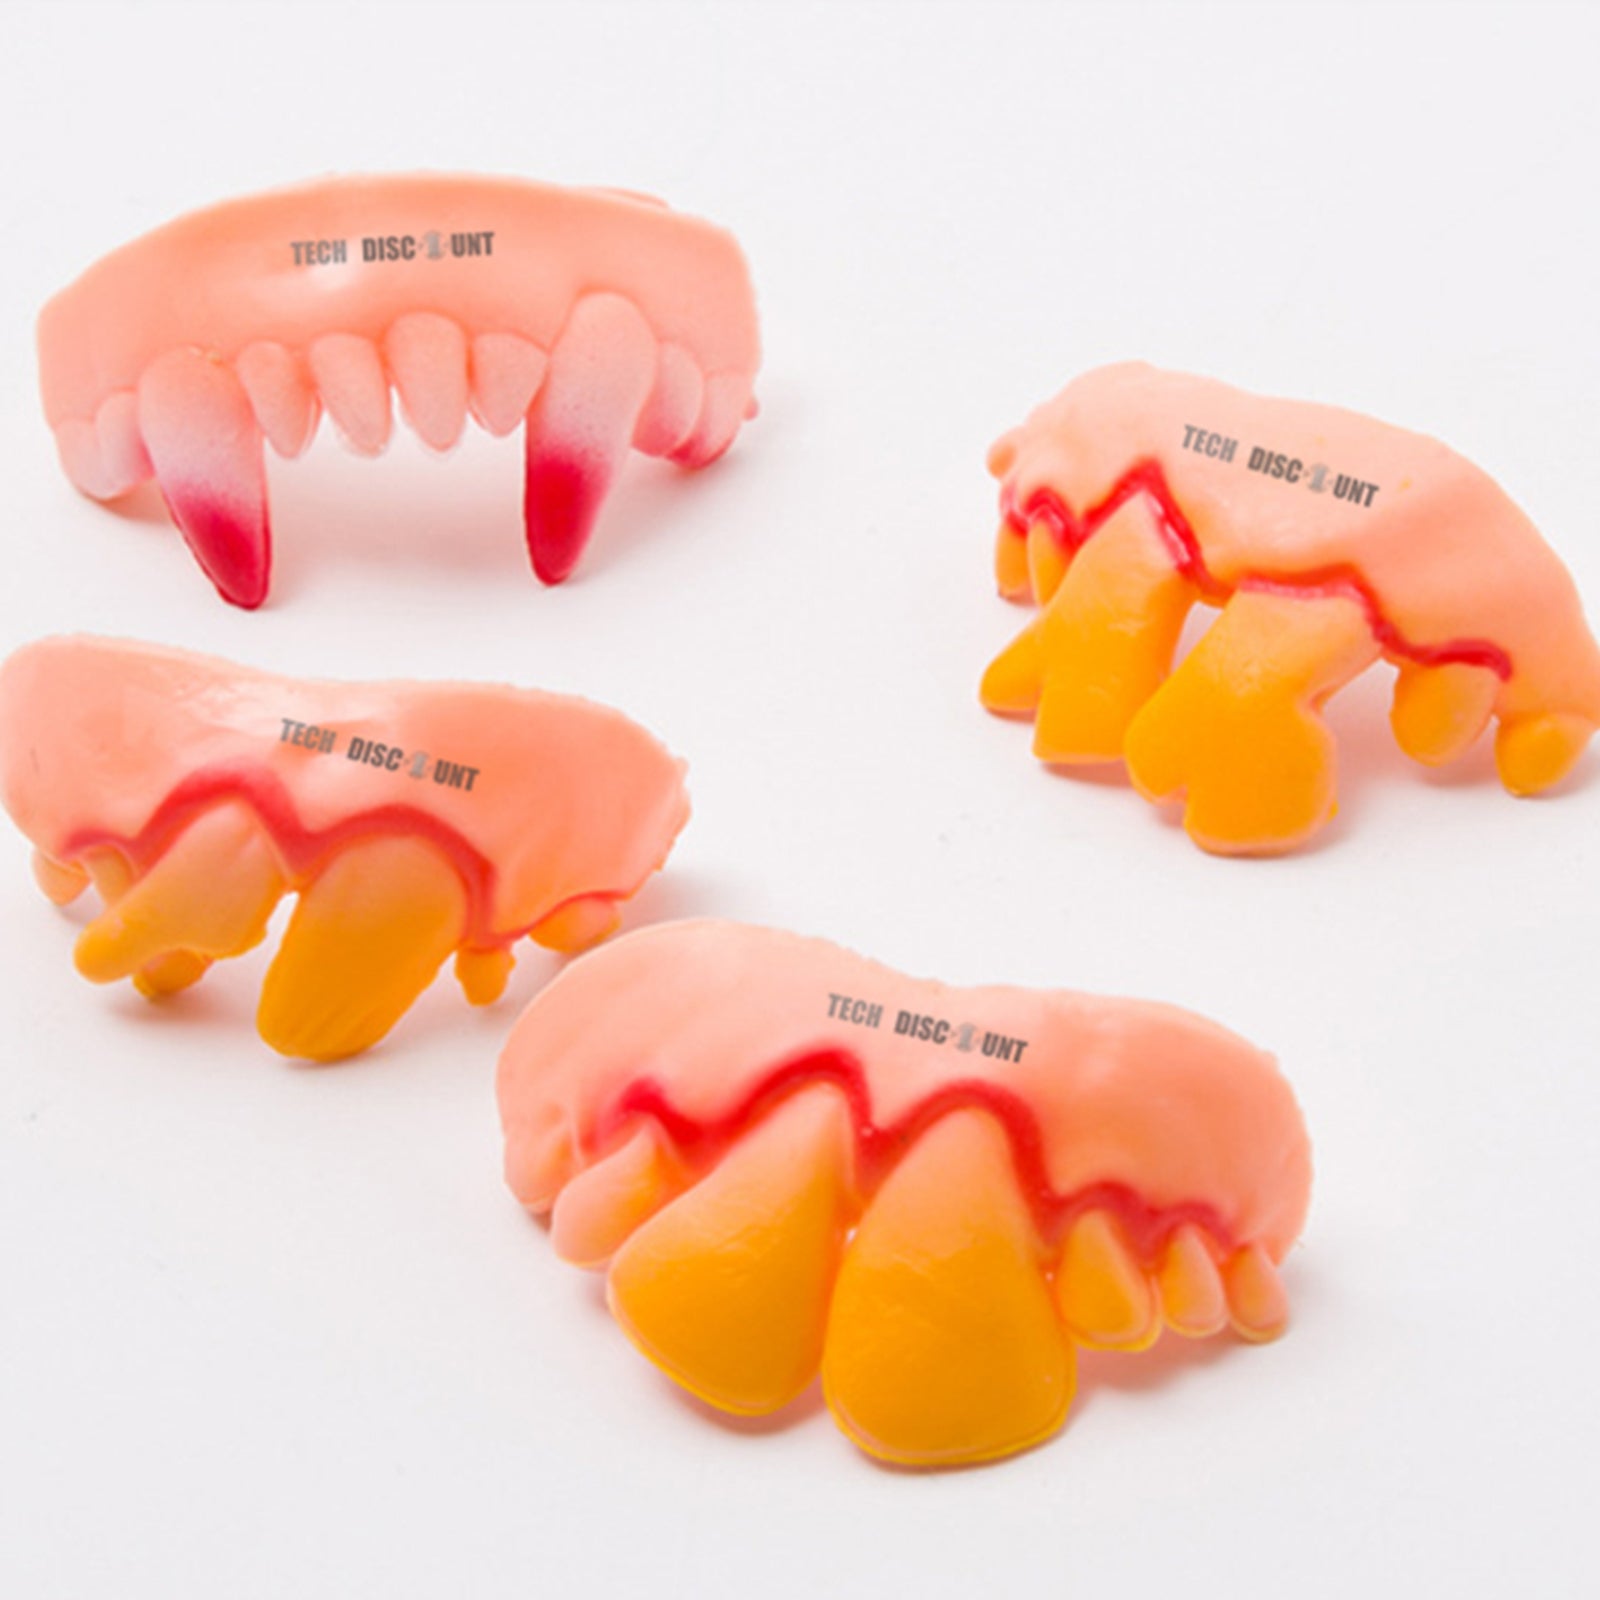 TD® ensemble dentier deguisement vampire enfant dents pourries dracula drole fantaisie fausse jaune farce halloween jouet monstre